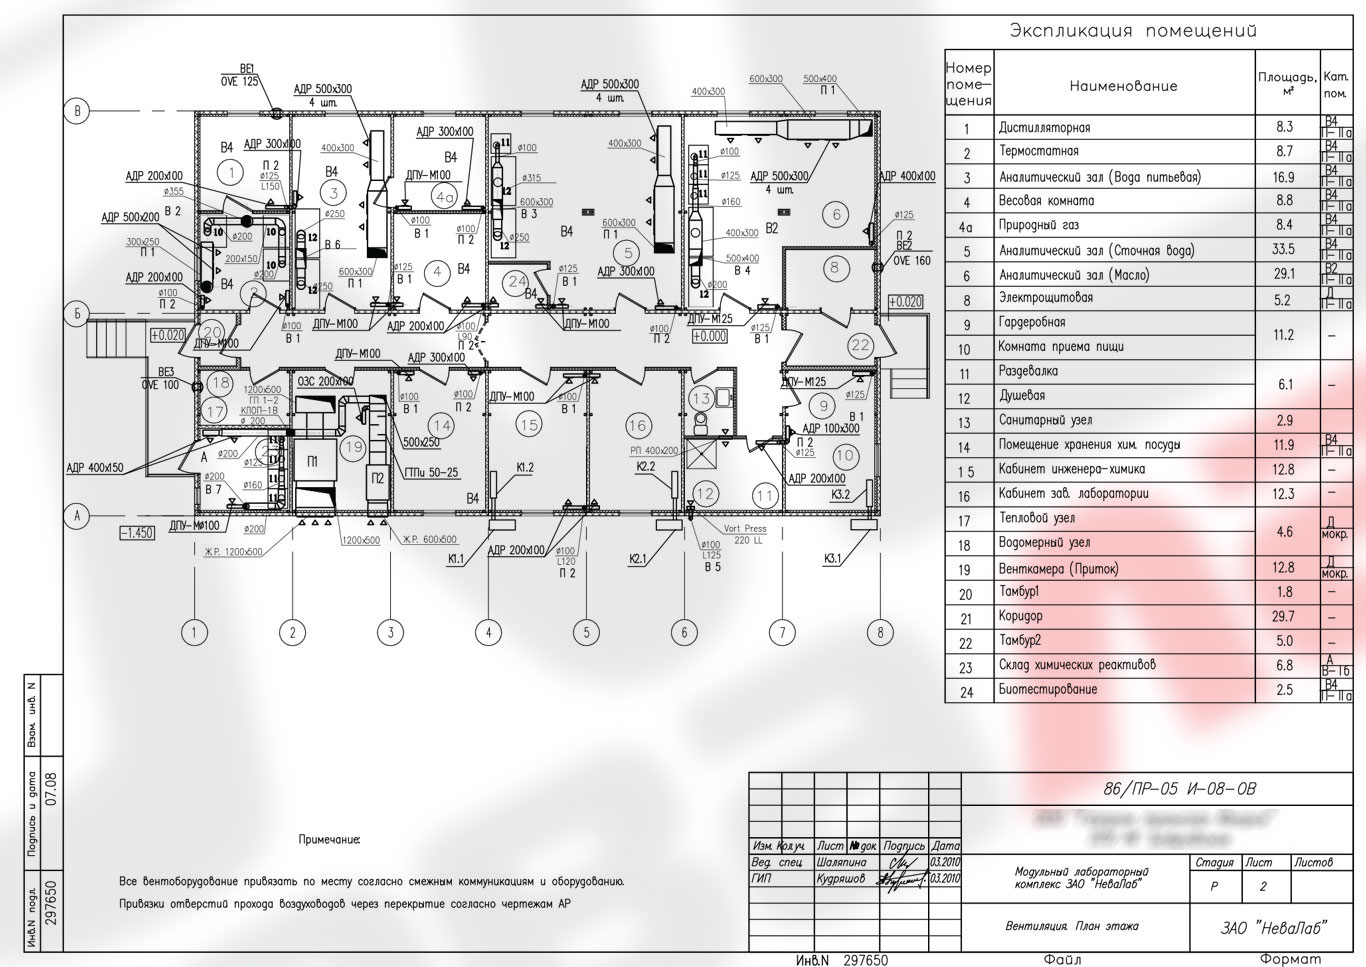 Вентиляция. План этажа. ЛПУ МГ Бобровское, Модульный лабораторный комплекс. Реализованный проект АО «НеваЛаб»